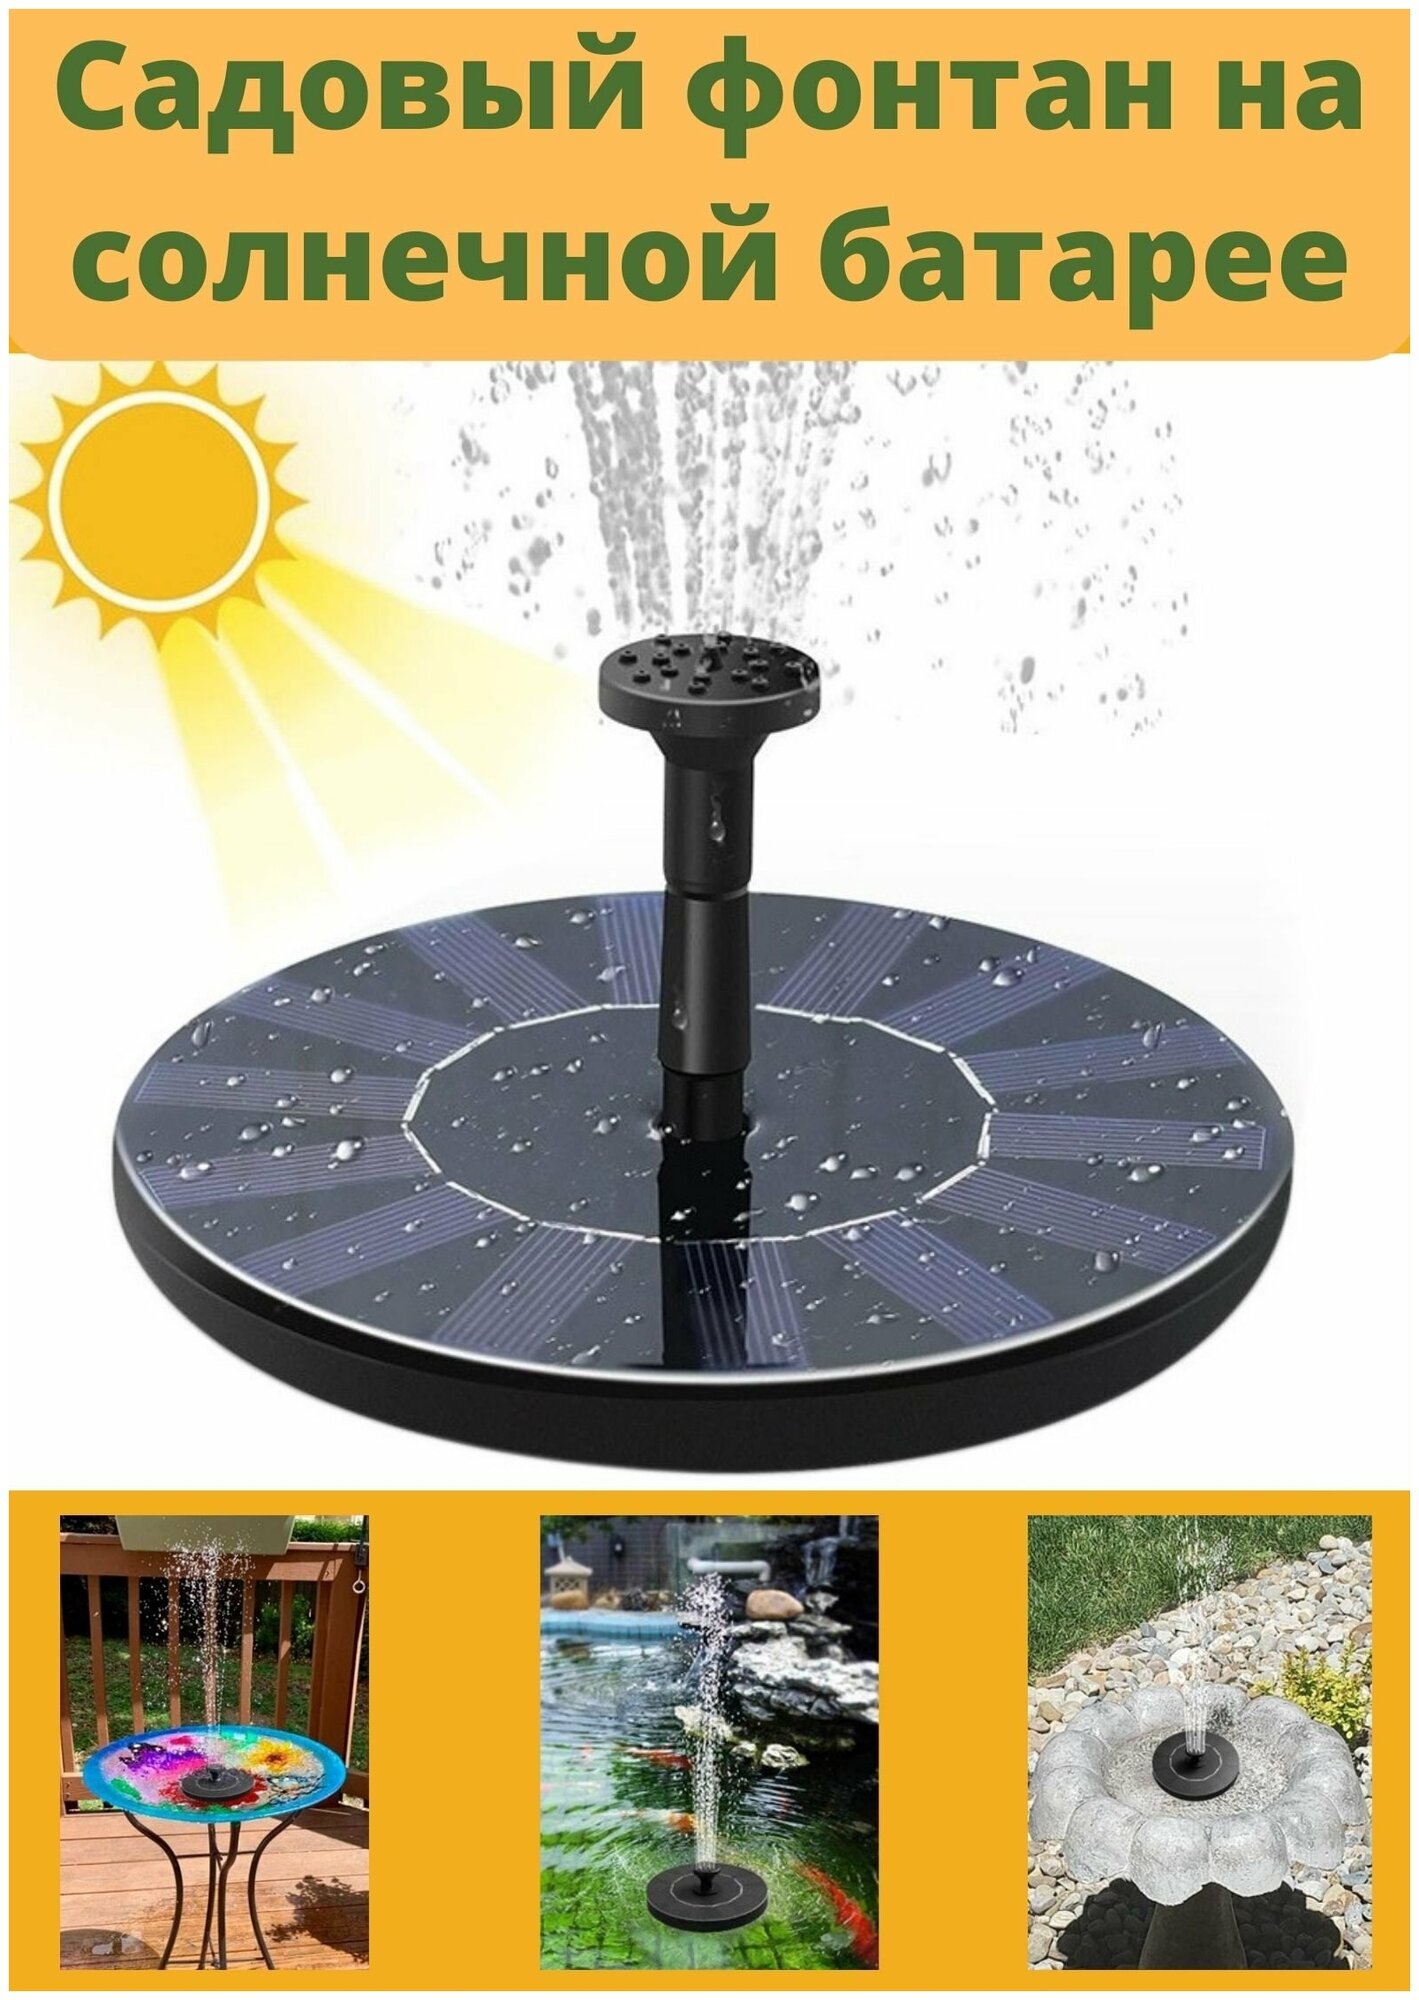 Плавающий садовый фонтан ANYSMART на солнечной батарее D=16 см